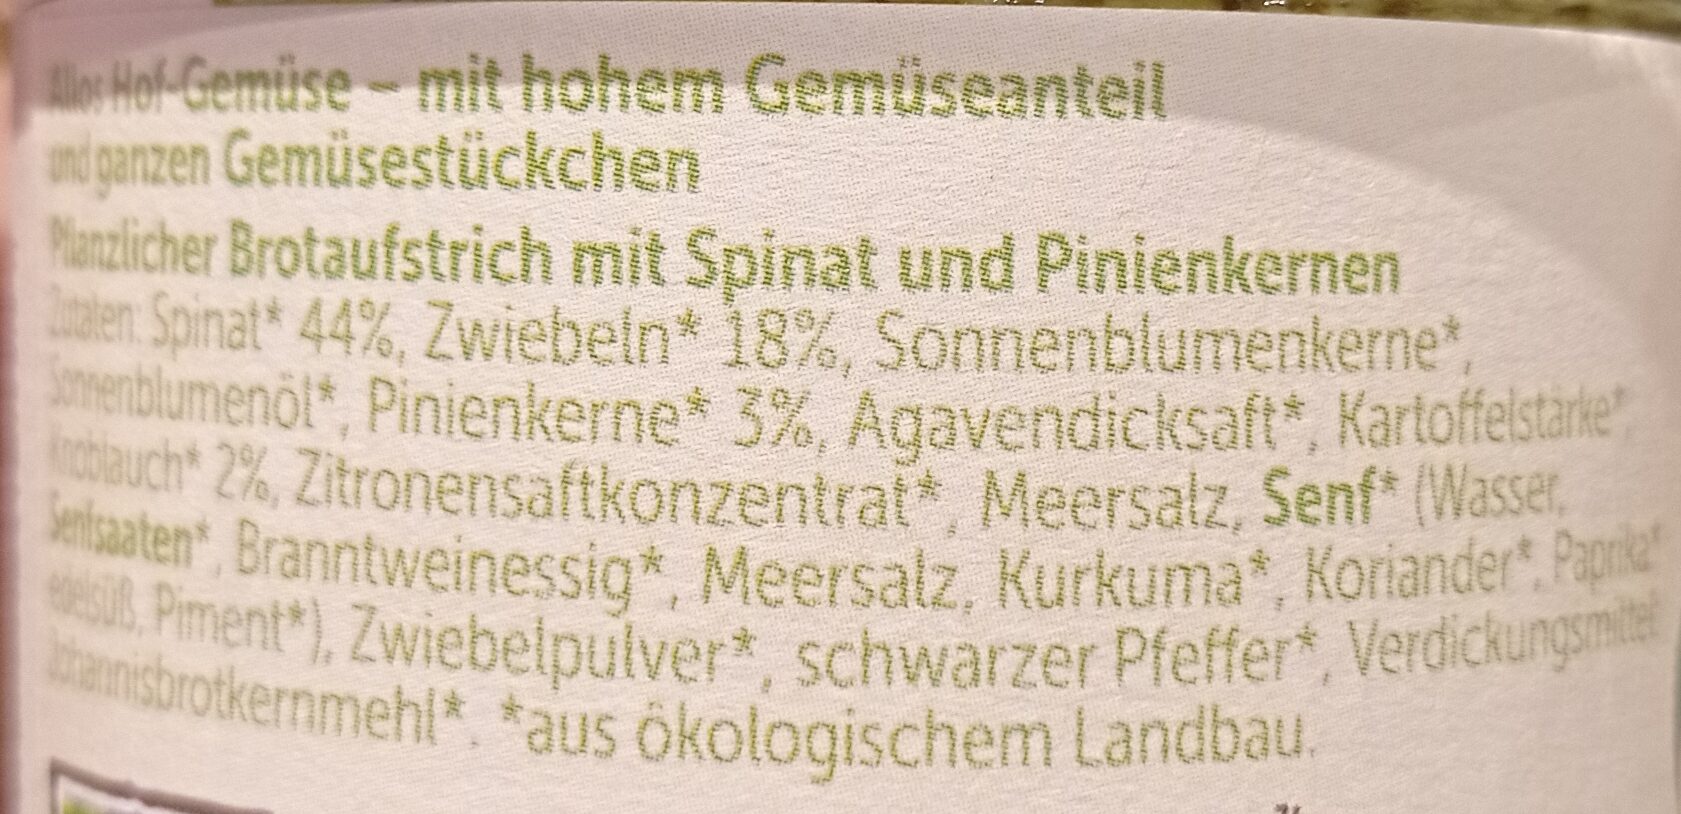 Sabines Spinat Pinienkerne - Zutaten